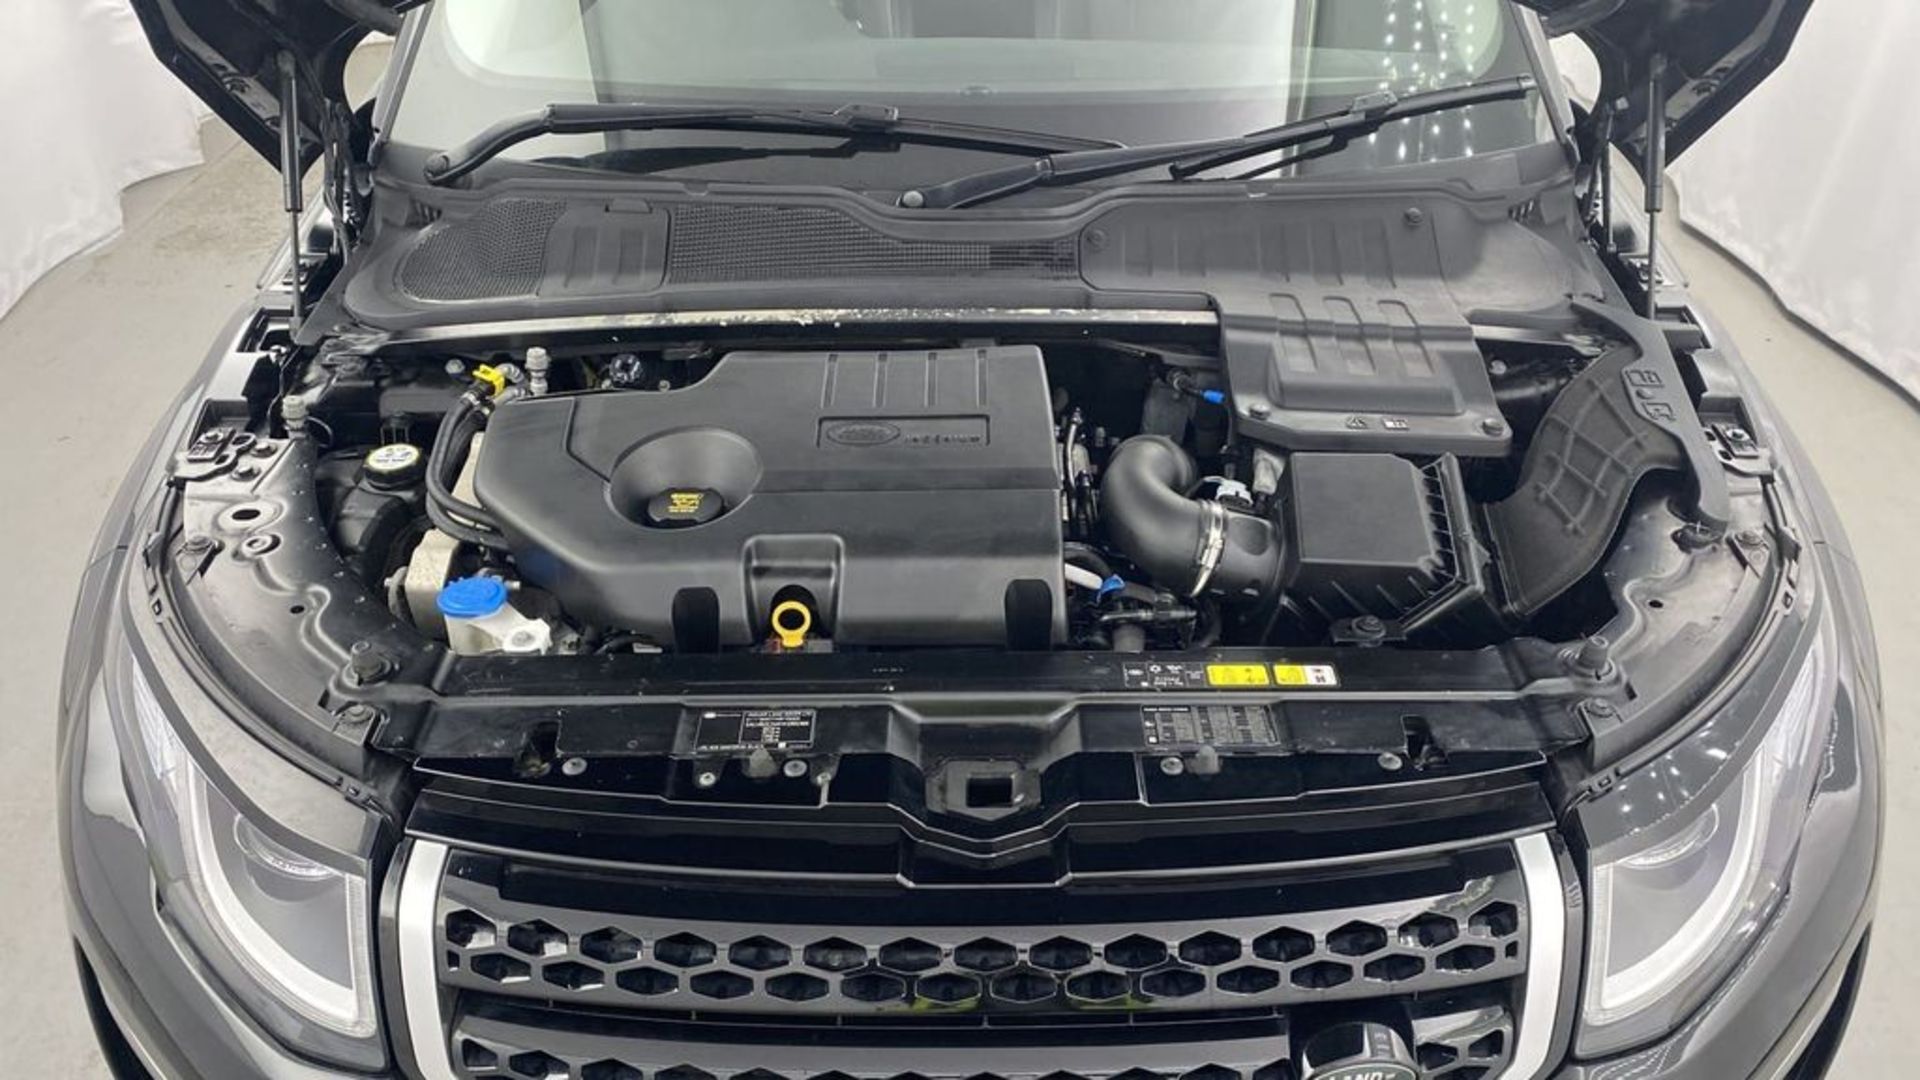 (Reserve Met) Range Rover Evoque 2.0 ED4 SE Tech - 2018 Model - FLRSH - Parking Sensors - 65k only!! - Image 11 of 14